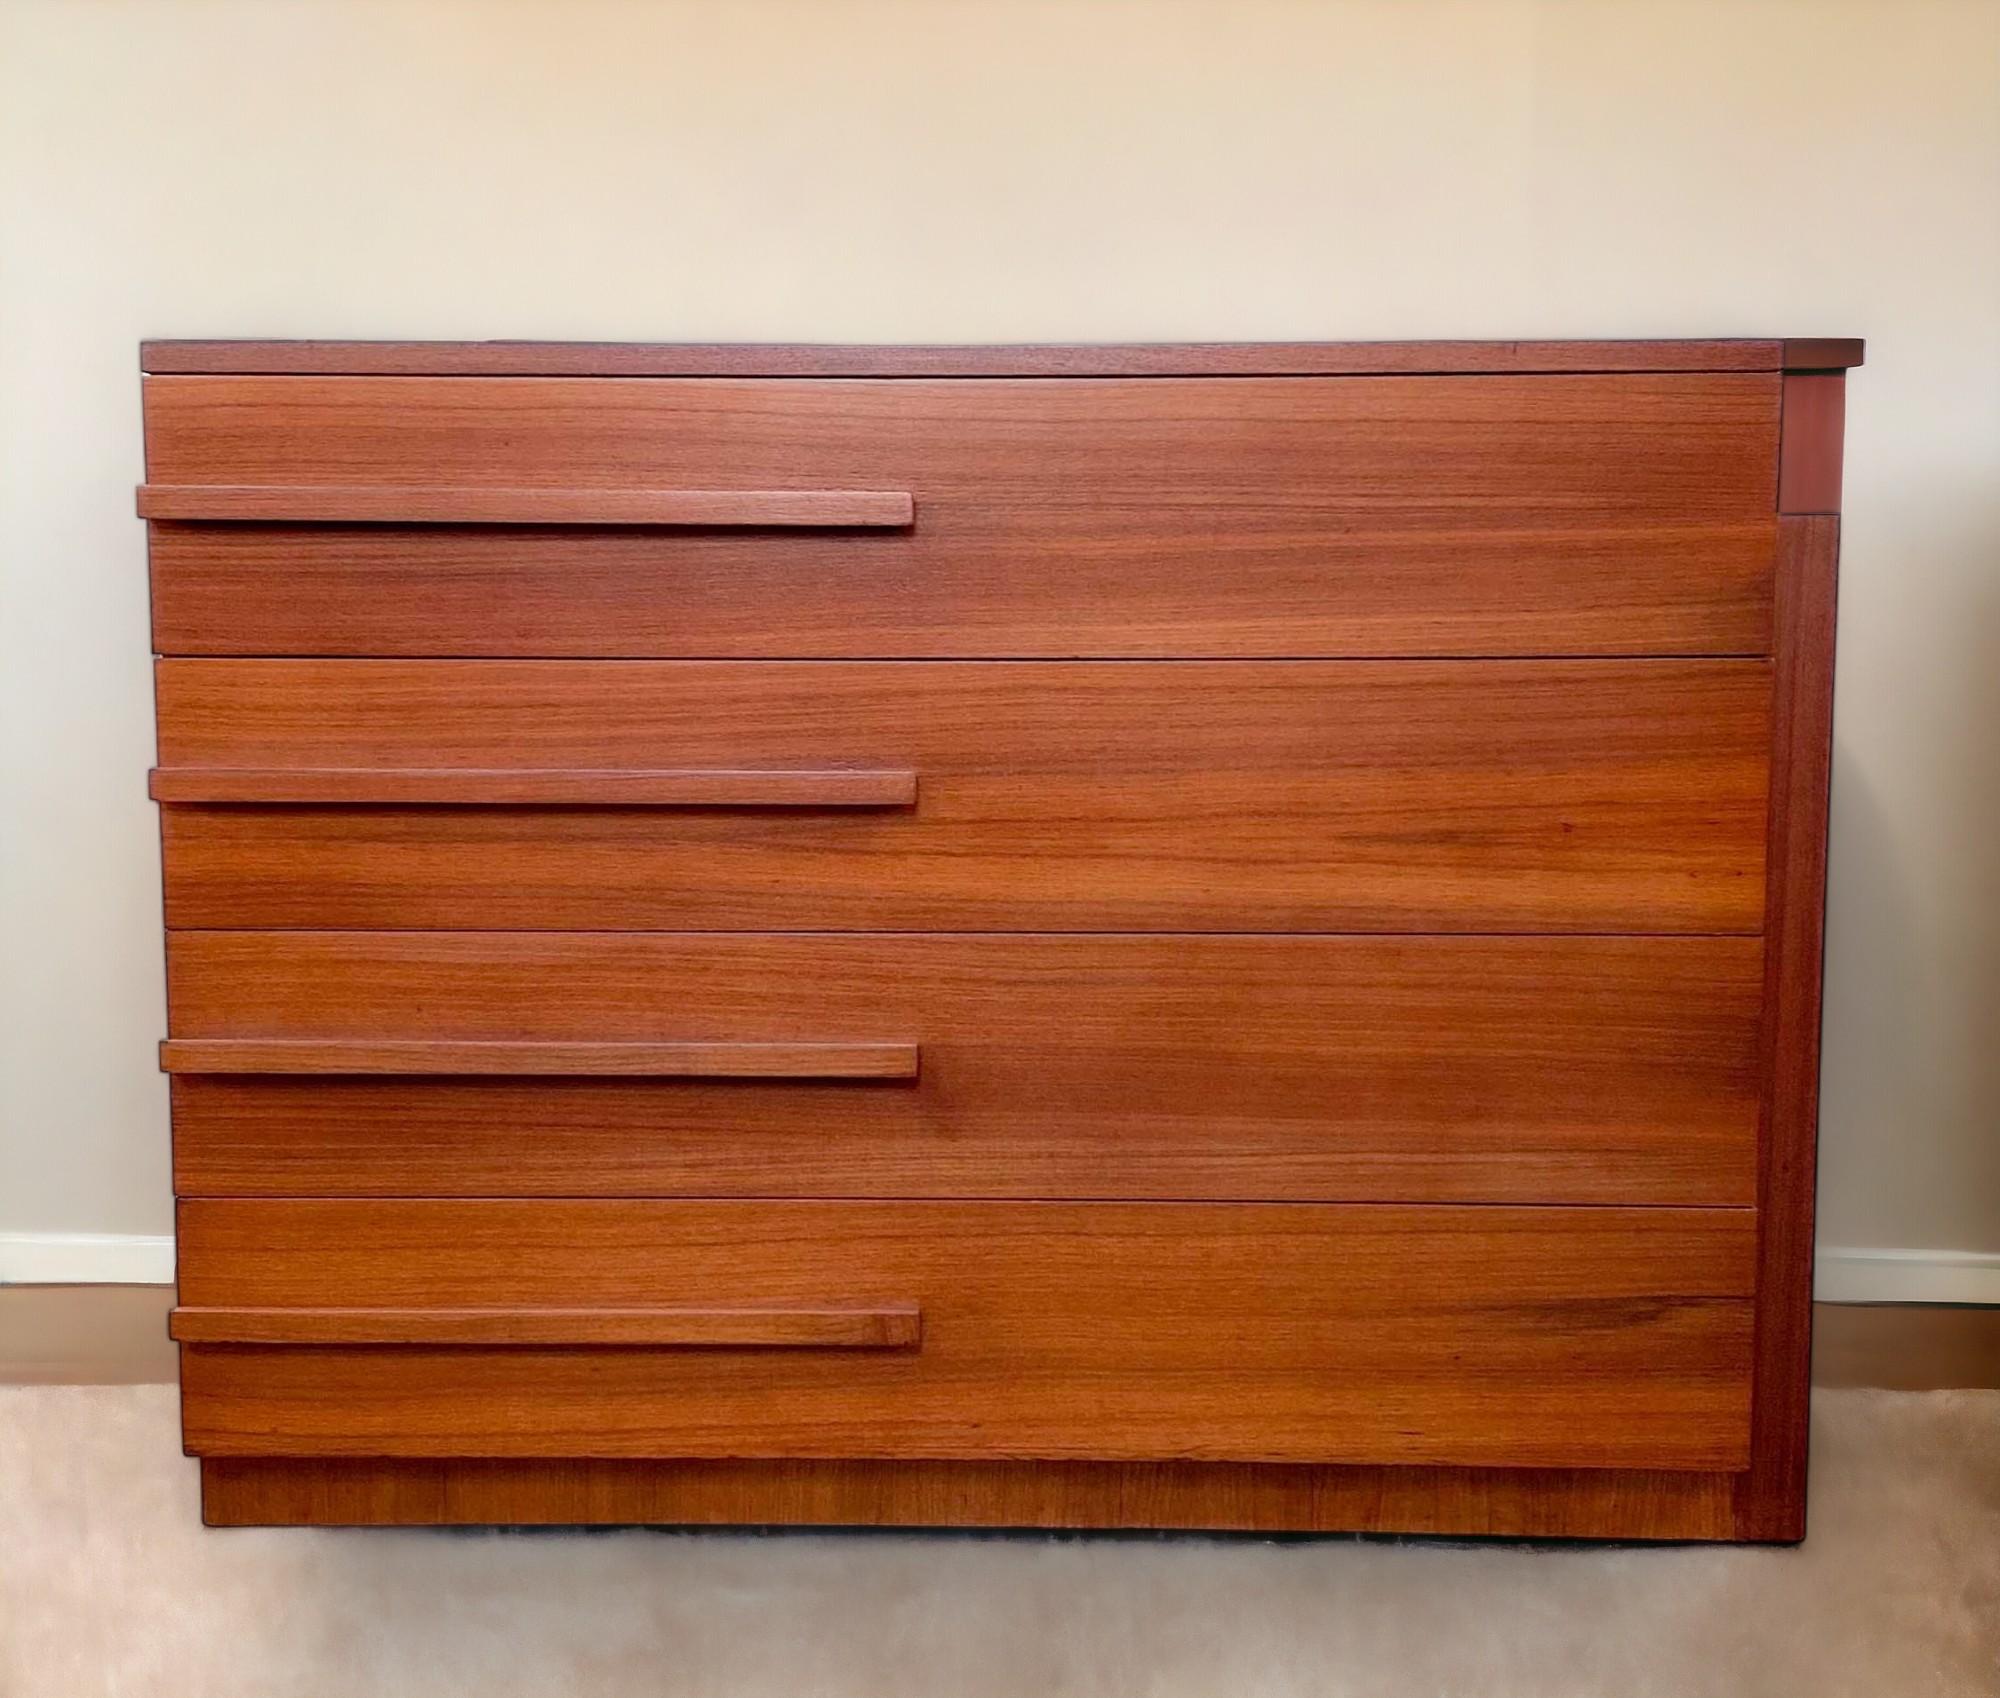 Eine Streamline Kommode mit vier Schubladen aus Mahagoni von Modernage Furniture Company of New York aus den 1930er Jahren. 
Der zurückgesetzte Sockel setzt sich als erhöhtes Paneel auf der rechten Seite des Schranks fort und endet auf halber Höhe